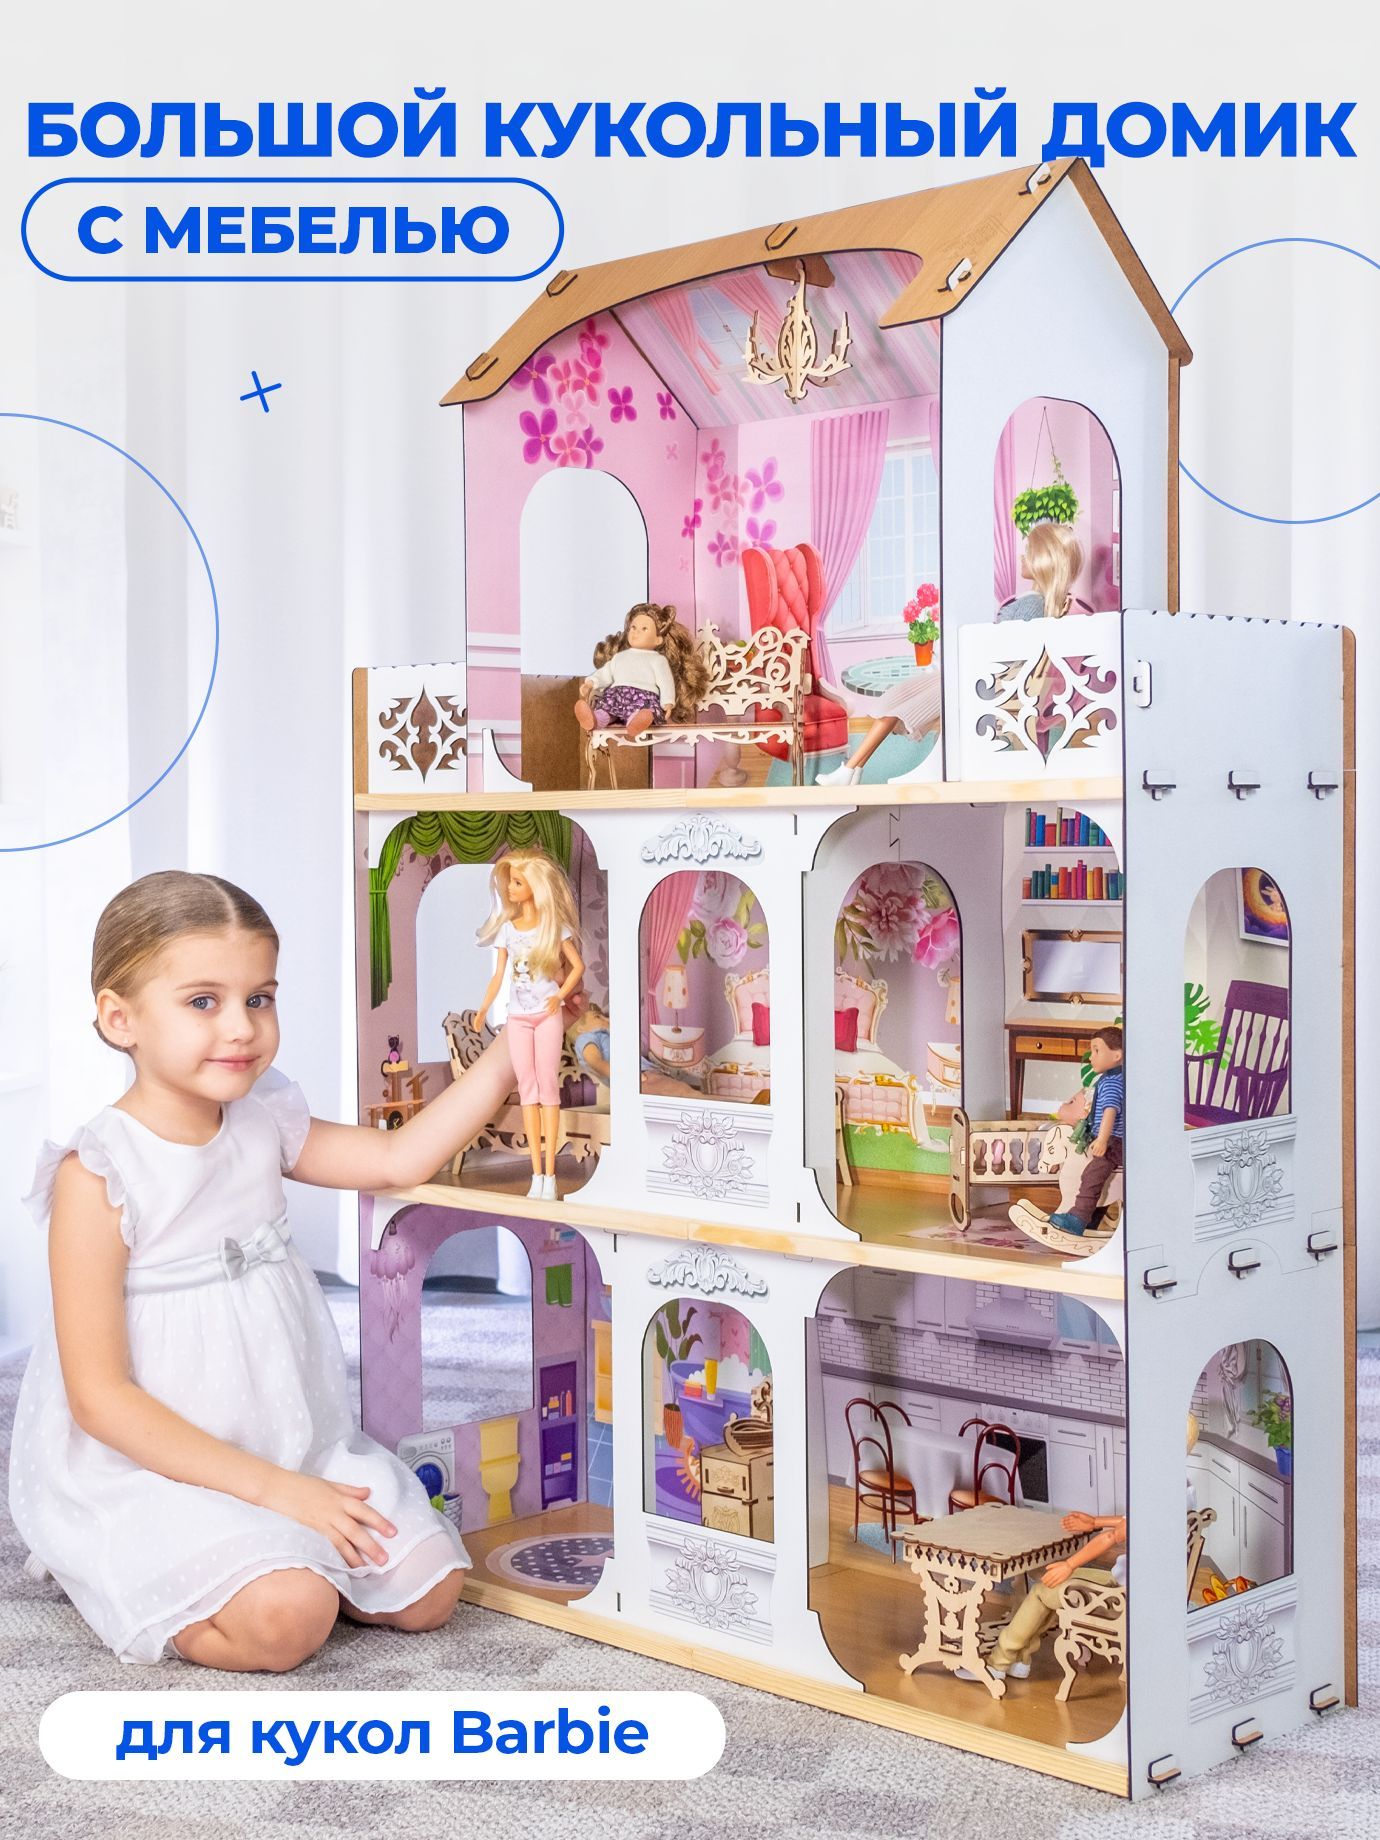 Купить кукольные домики в интернет магазине kormstroytorg.ru